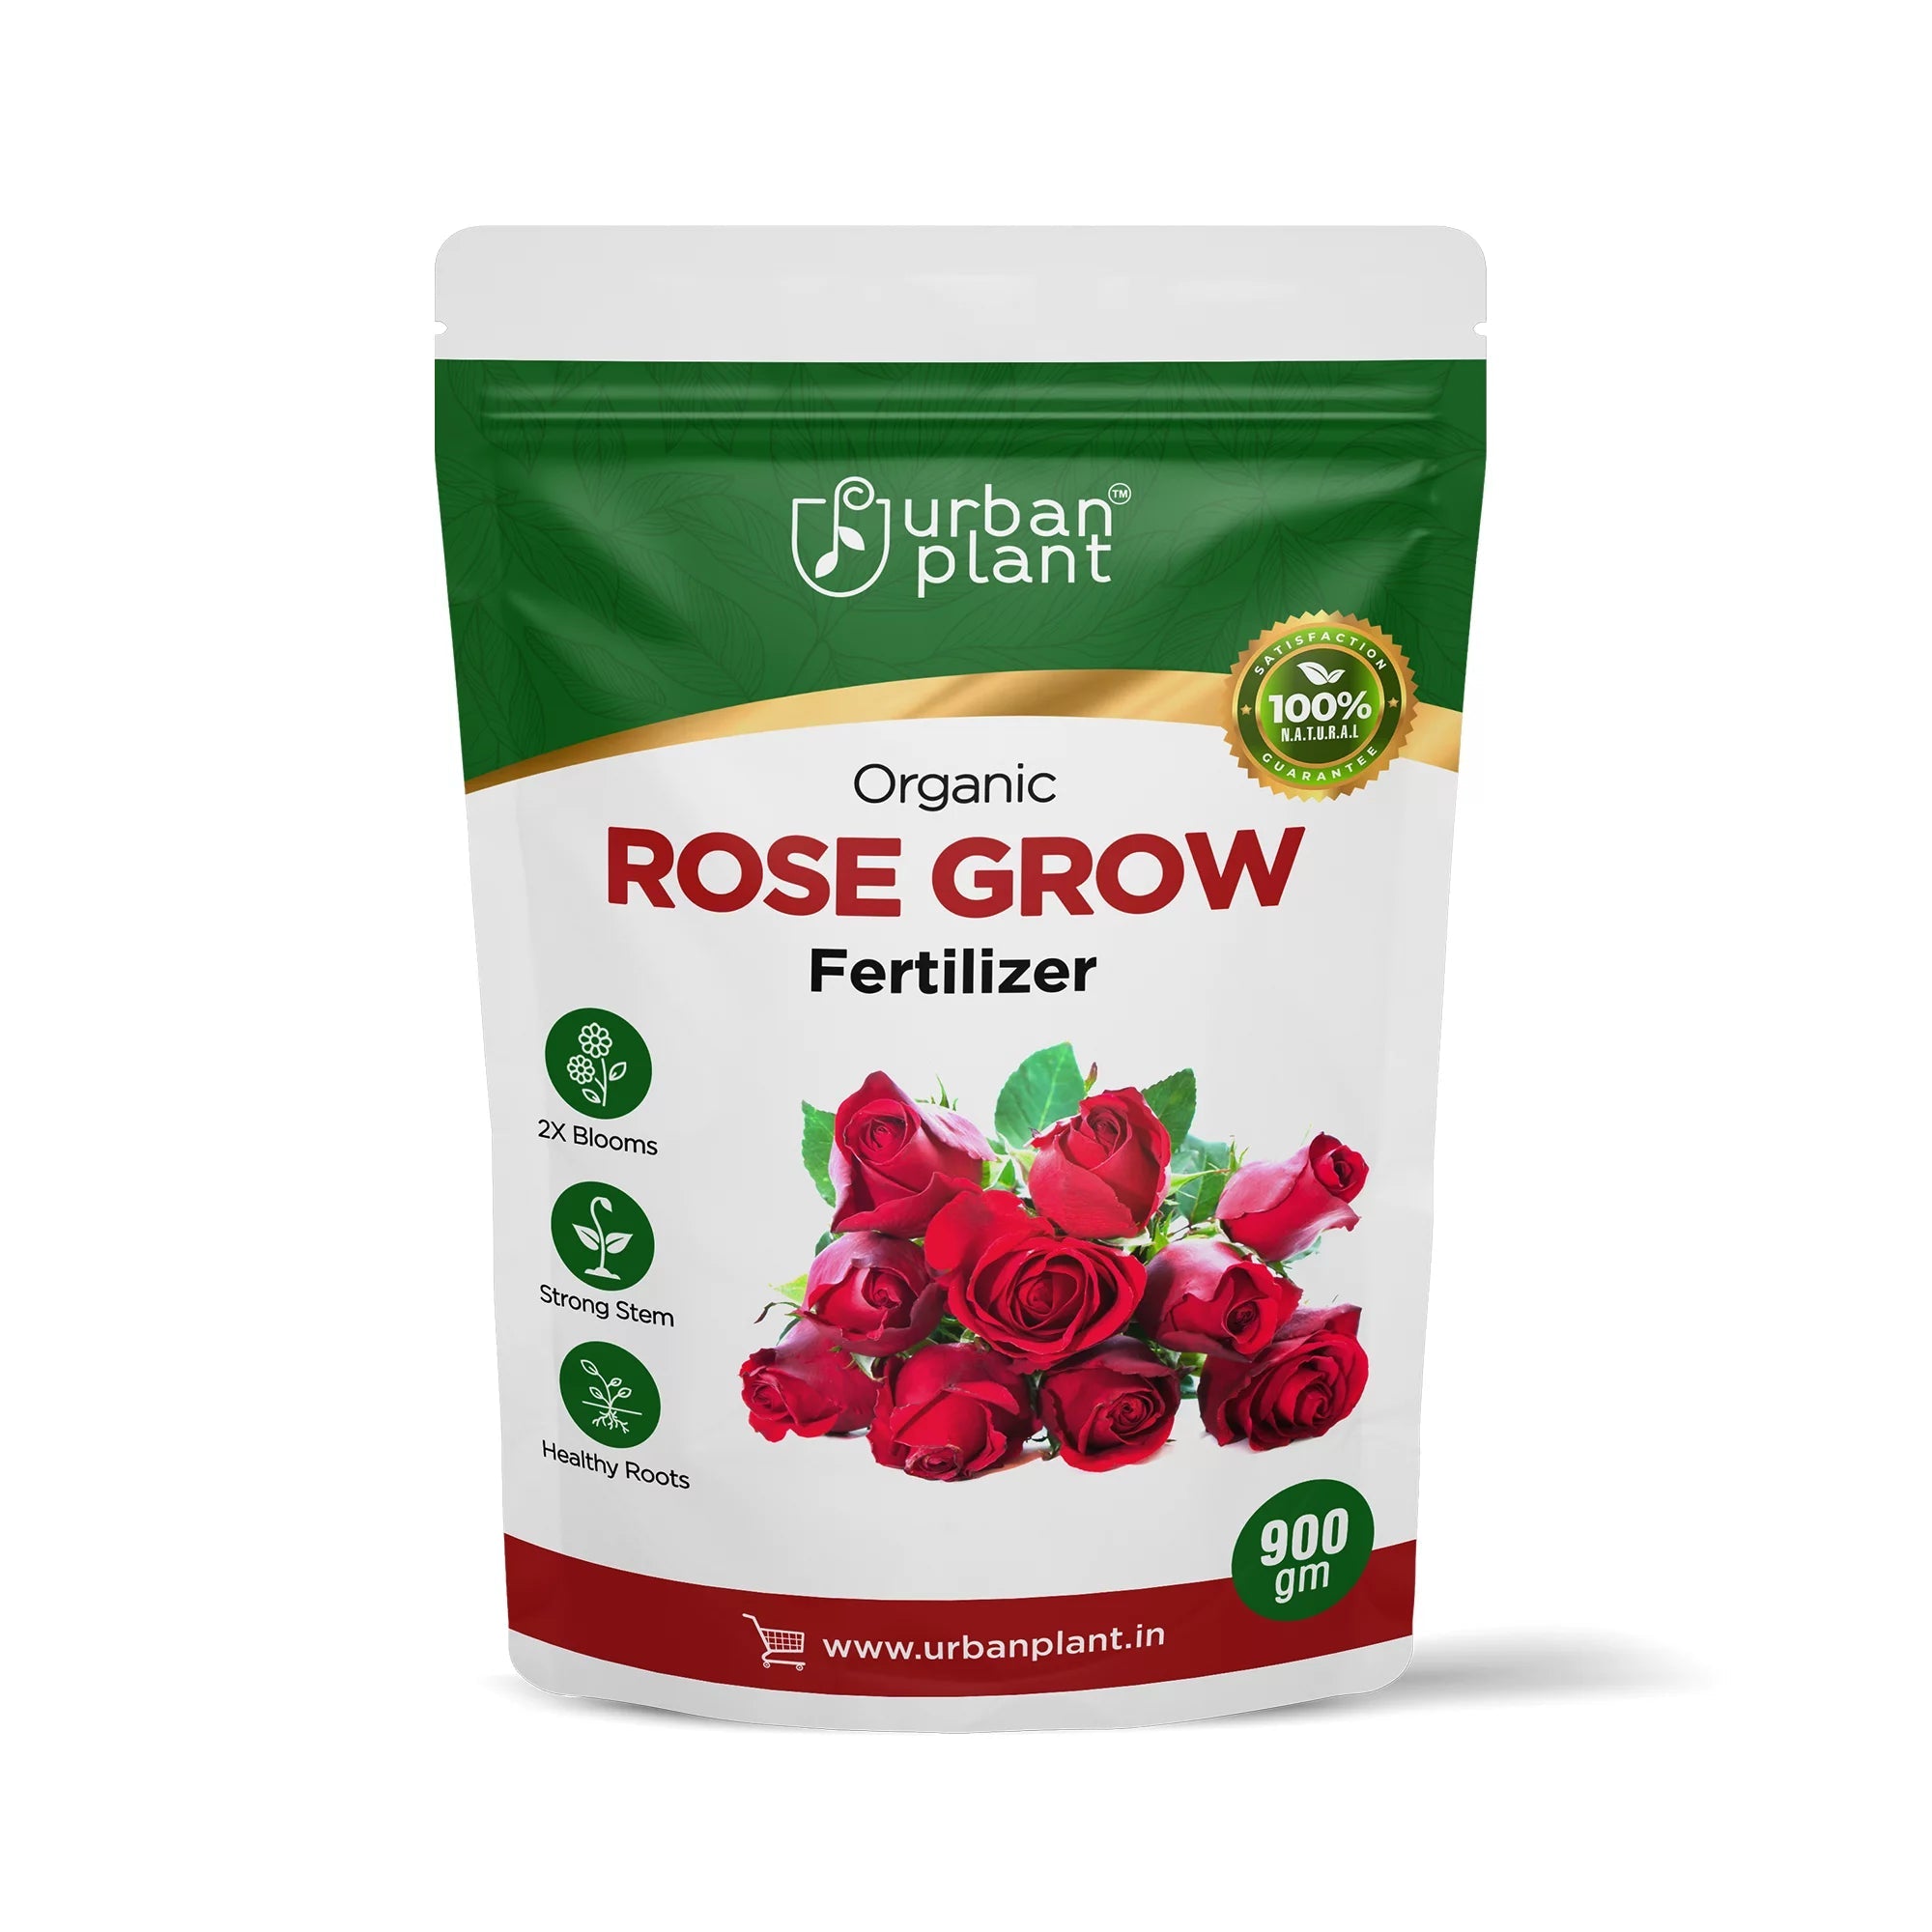 Rose Booster Fertilizer for Rose Plants 900g Potting Mix Urban Plant 1 